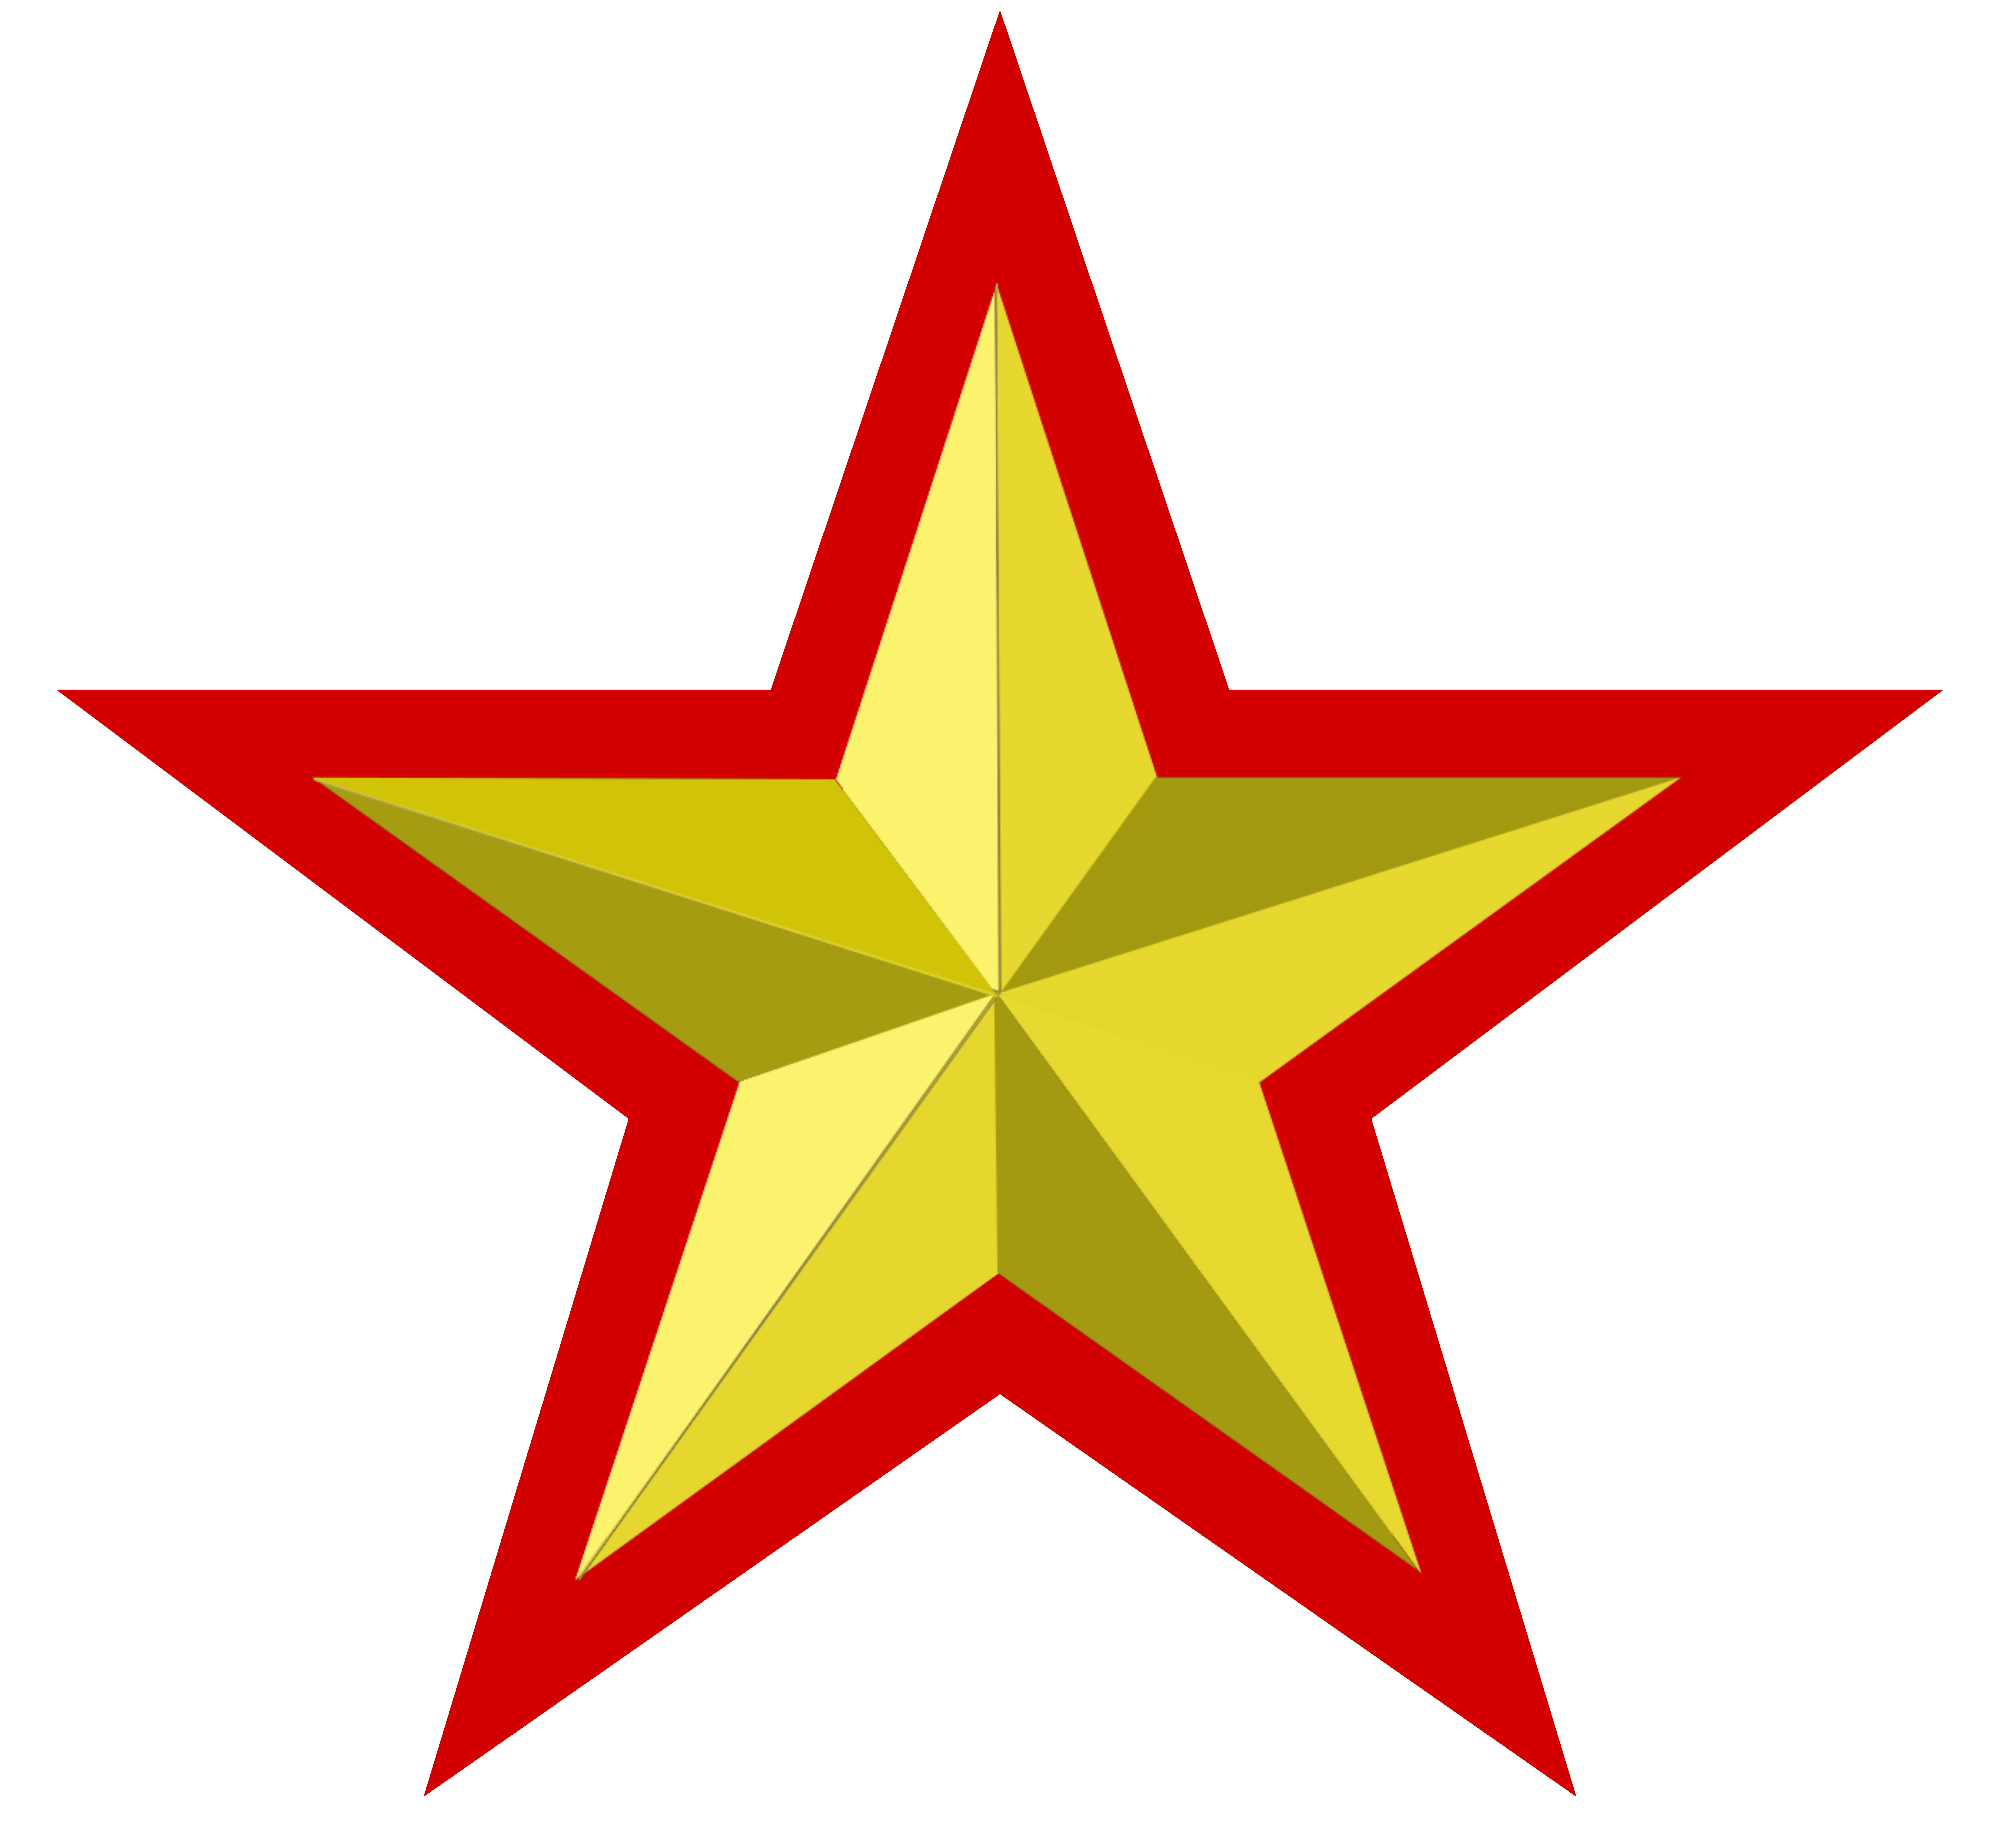 Sovyet bayrağı